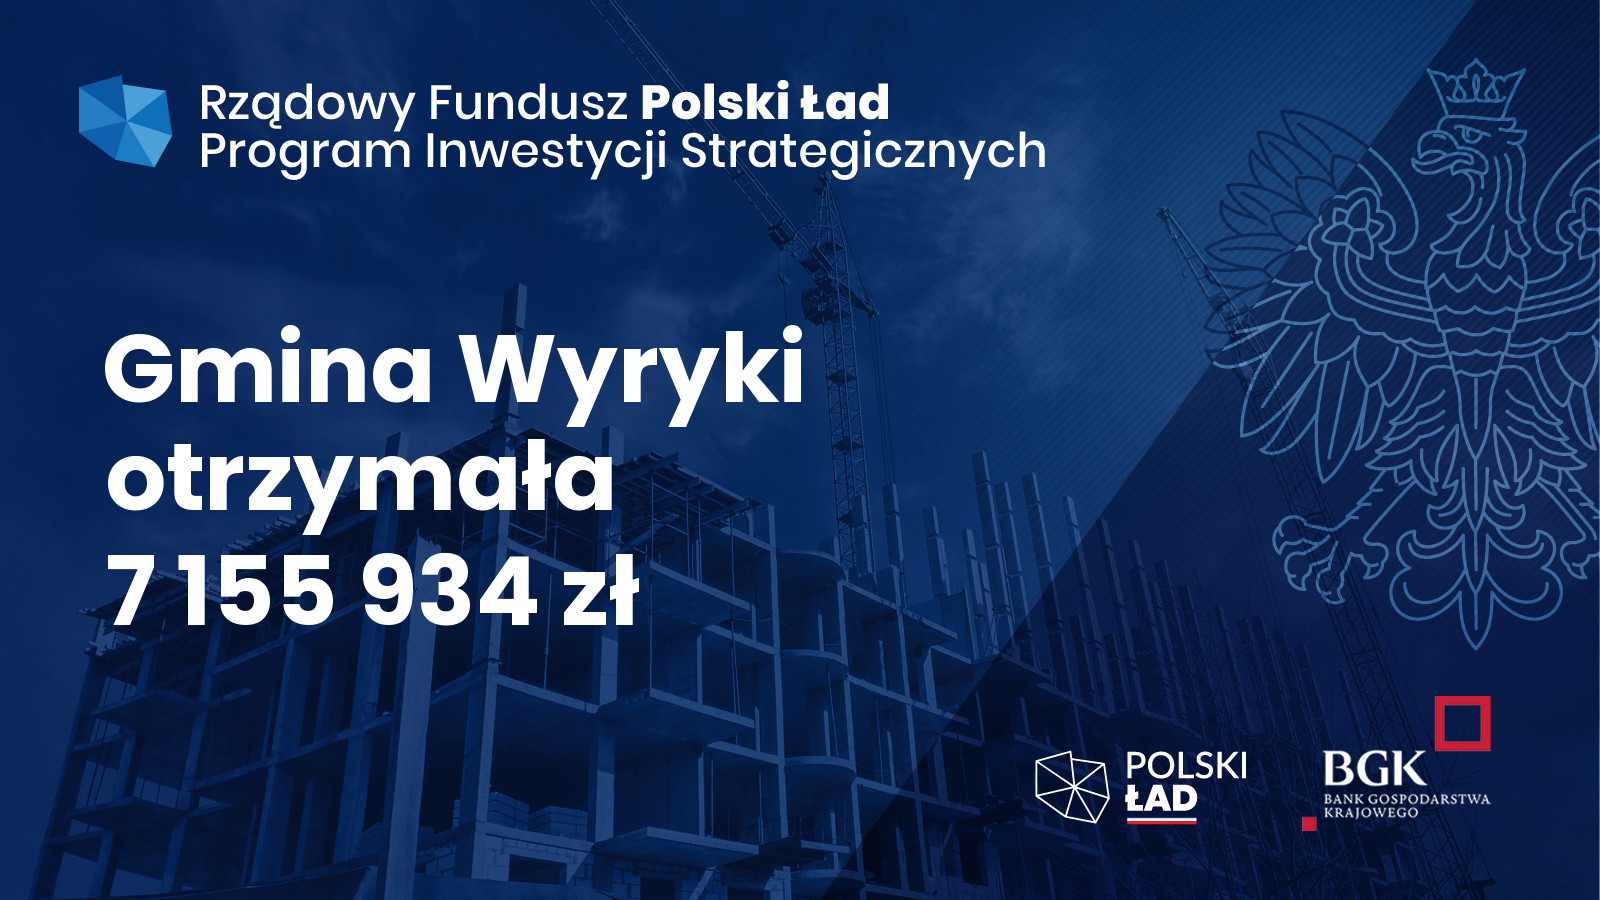 Grafika zawiera logotyp Rządowego Funduszu Polski Ład Programu Inwestycji Strategicznych, poniżej tekst „Gmina Wyryki otrzymała 7 155 934 zł”. Dolny prawy róg logotypy Polski Ład oraz Banku Gospodarstwa Krajowego